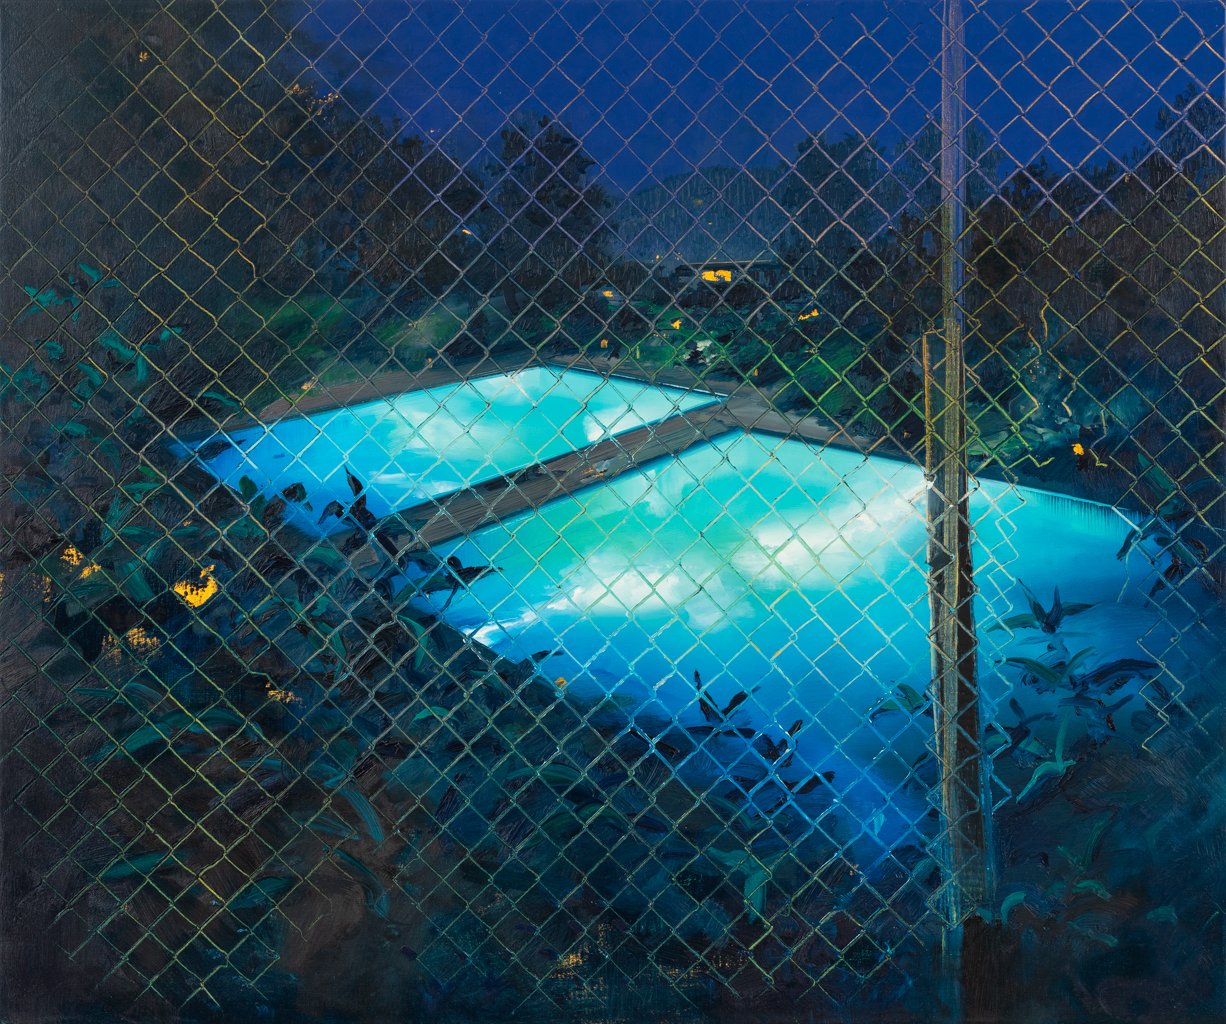 Fence/Pool (#2146)